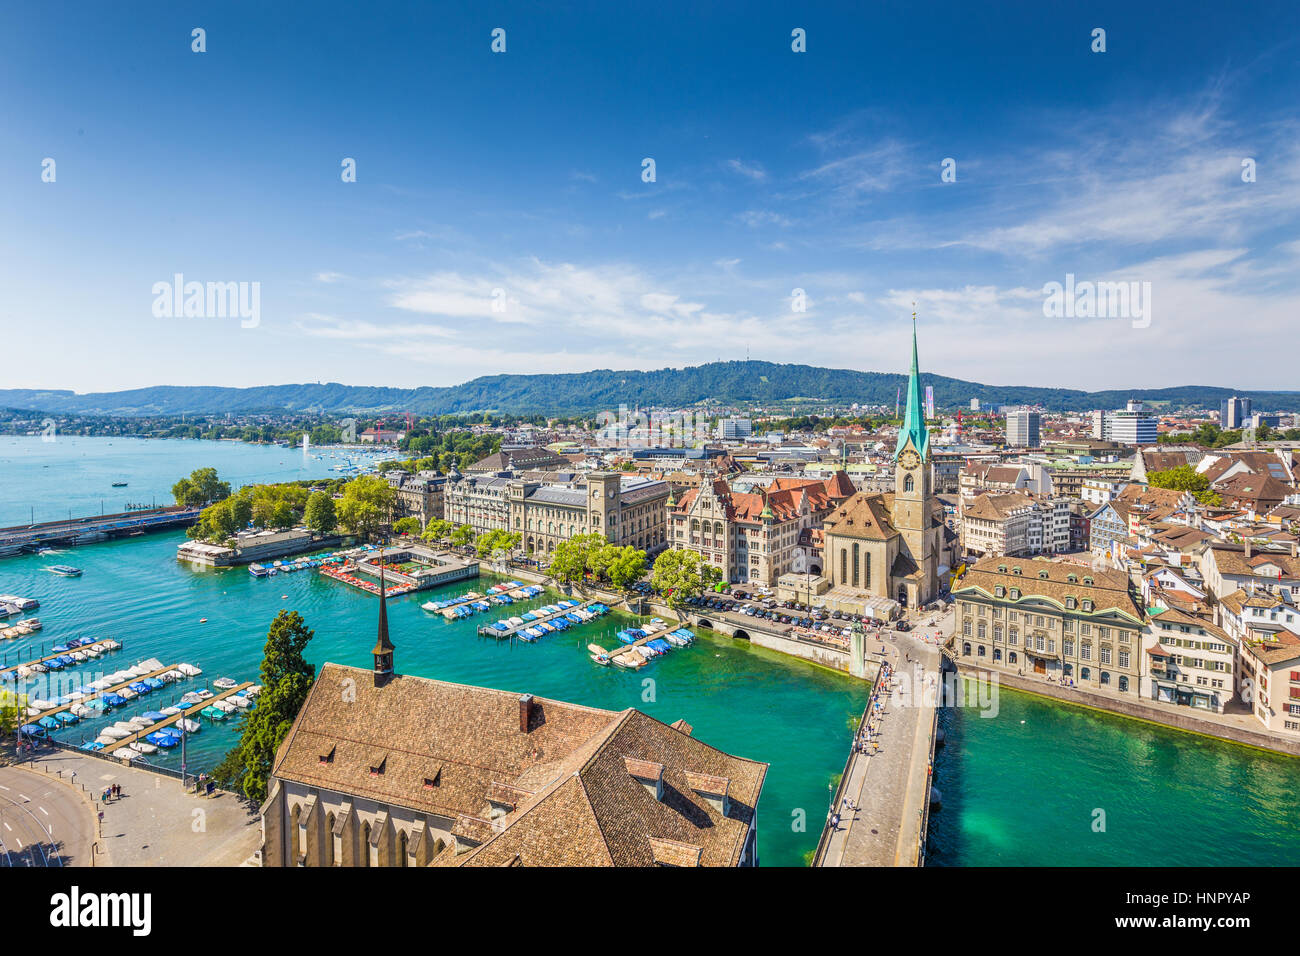 Vue aérienne du centre-ville de Zurich avec célèbre église Fraumunster et rivière Limmat au lac de Zurich à partir de l'Église Grossmunster, Canton de Zurich, Suisse Banque D'Images